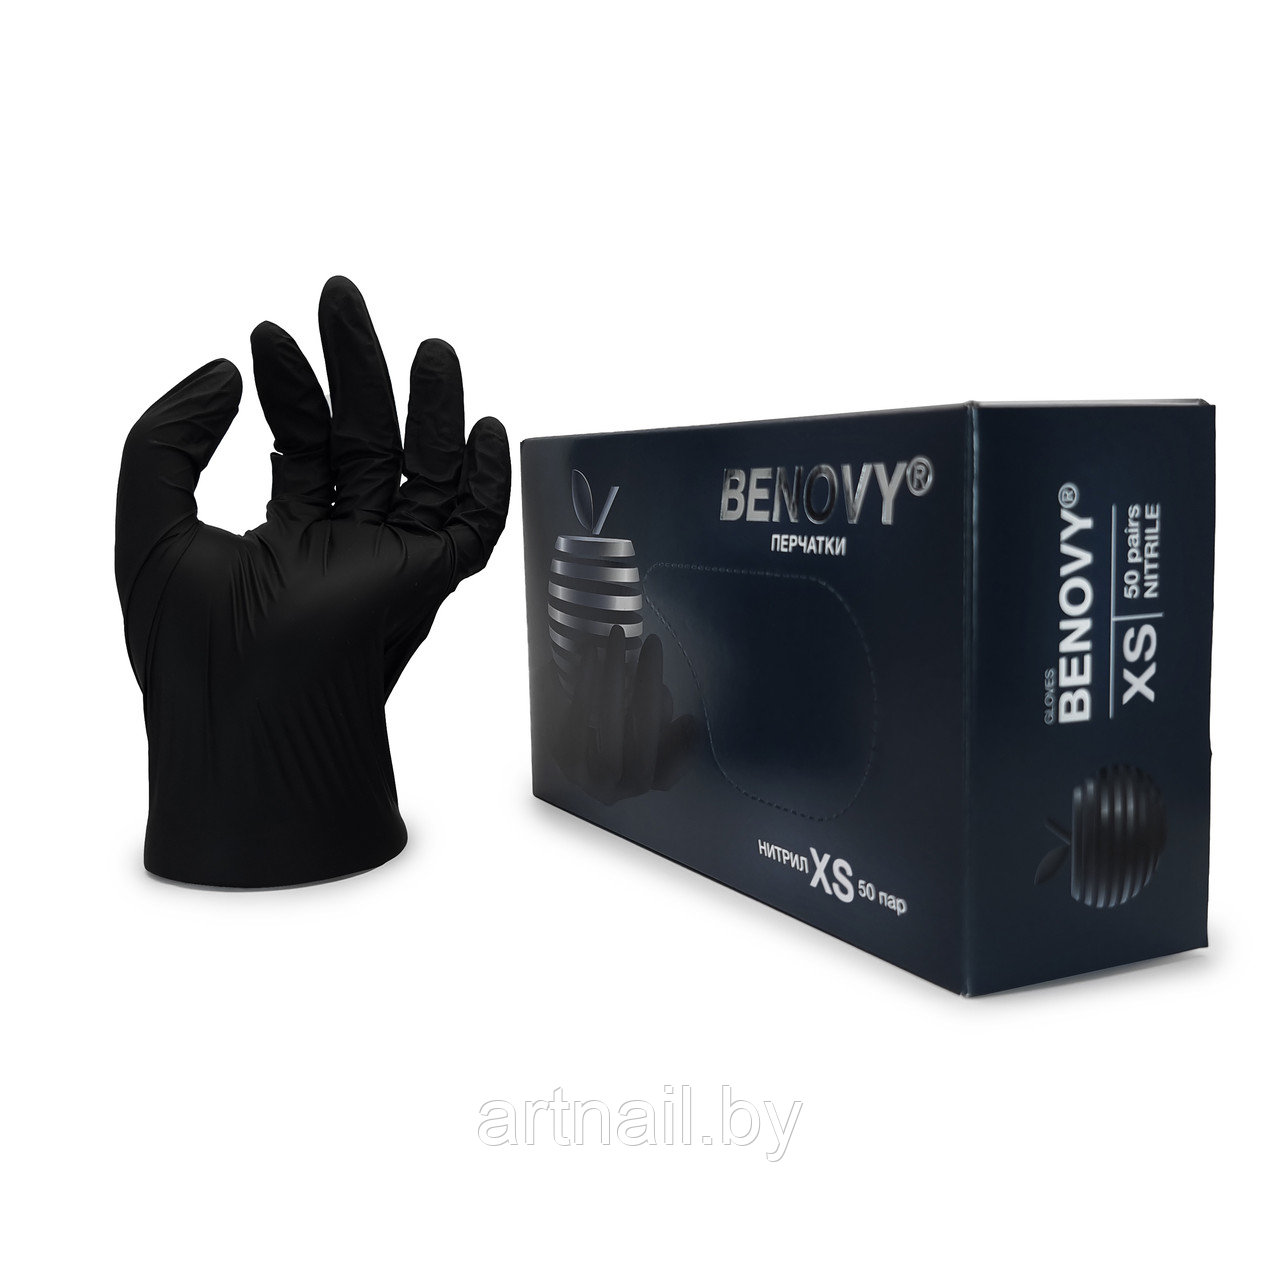 Перчатки нитриловые Benovy, размер XS, черные 100 шт/уп. (50 пар)